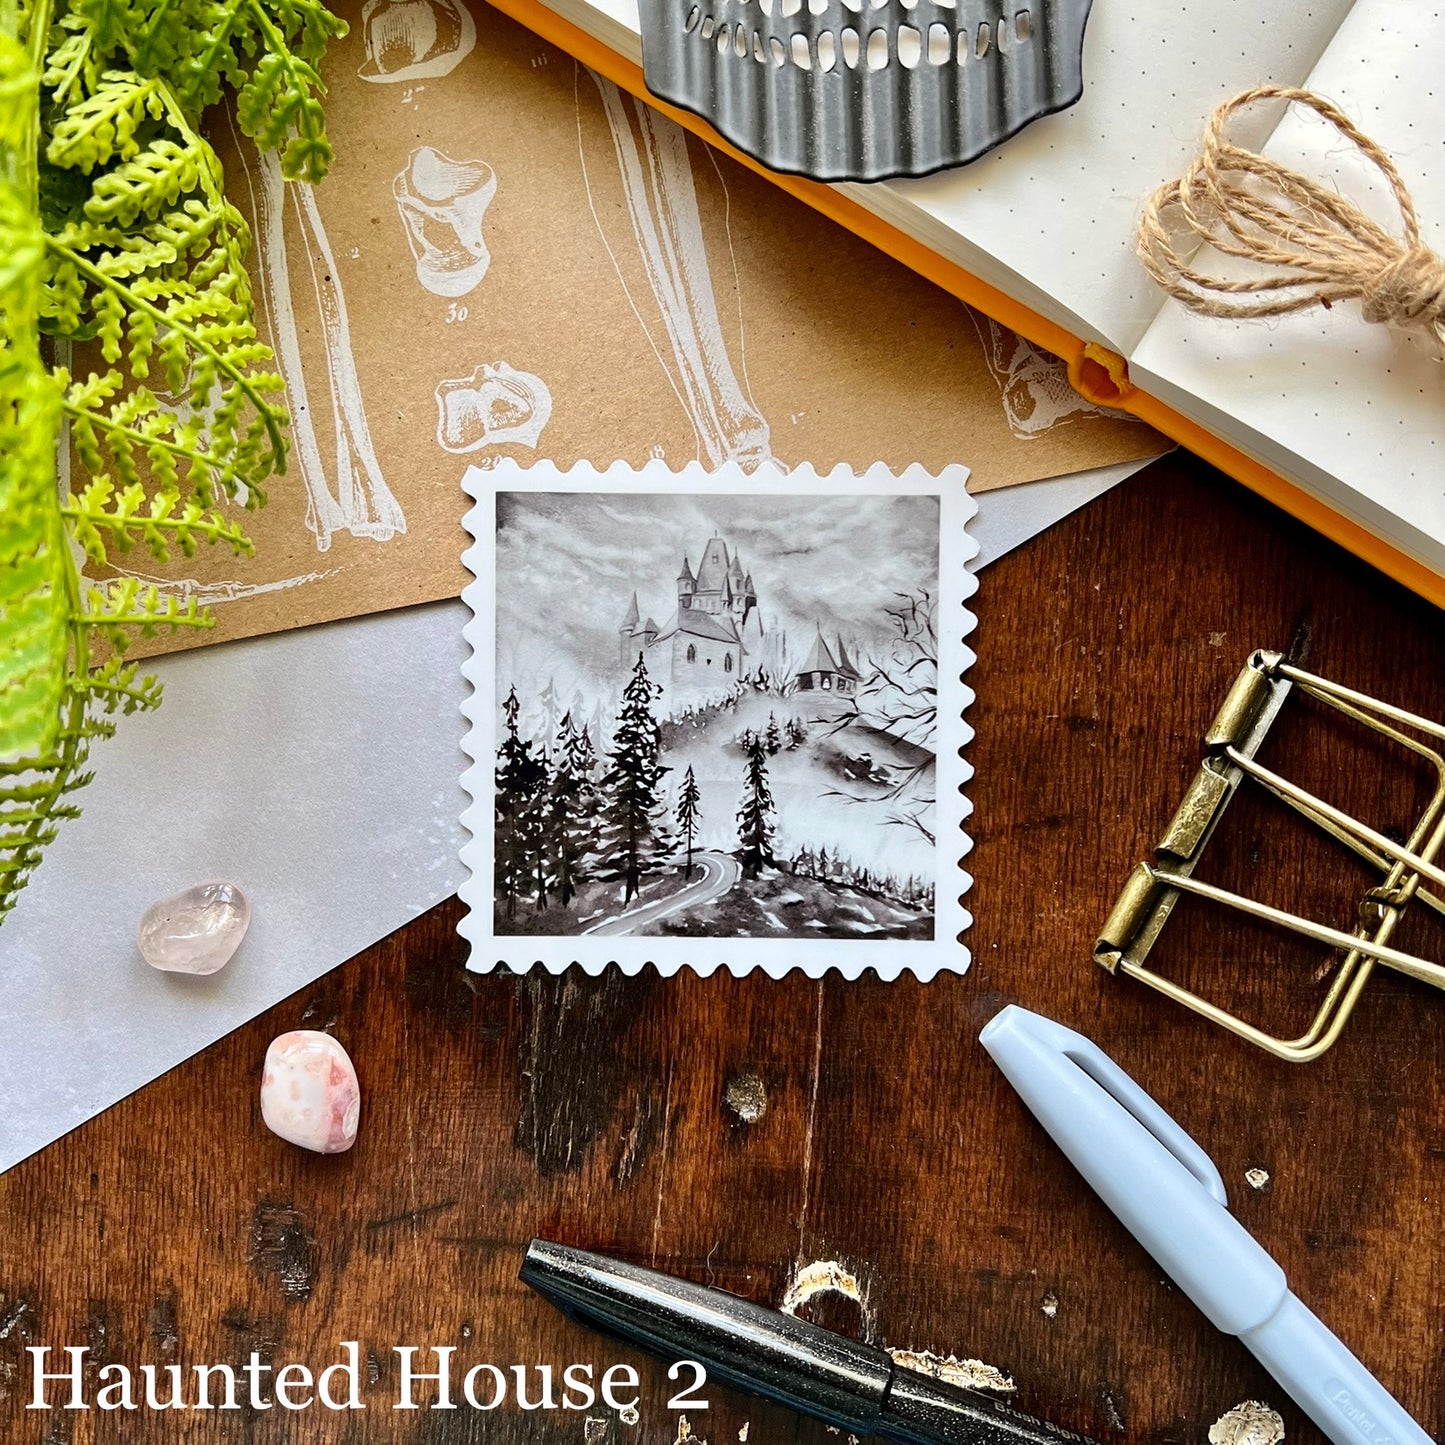 Haunted House Stamp Vinyl Sticker